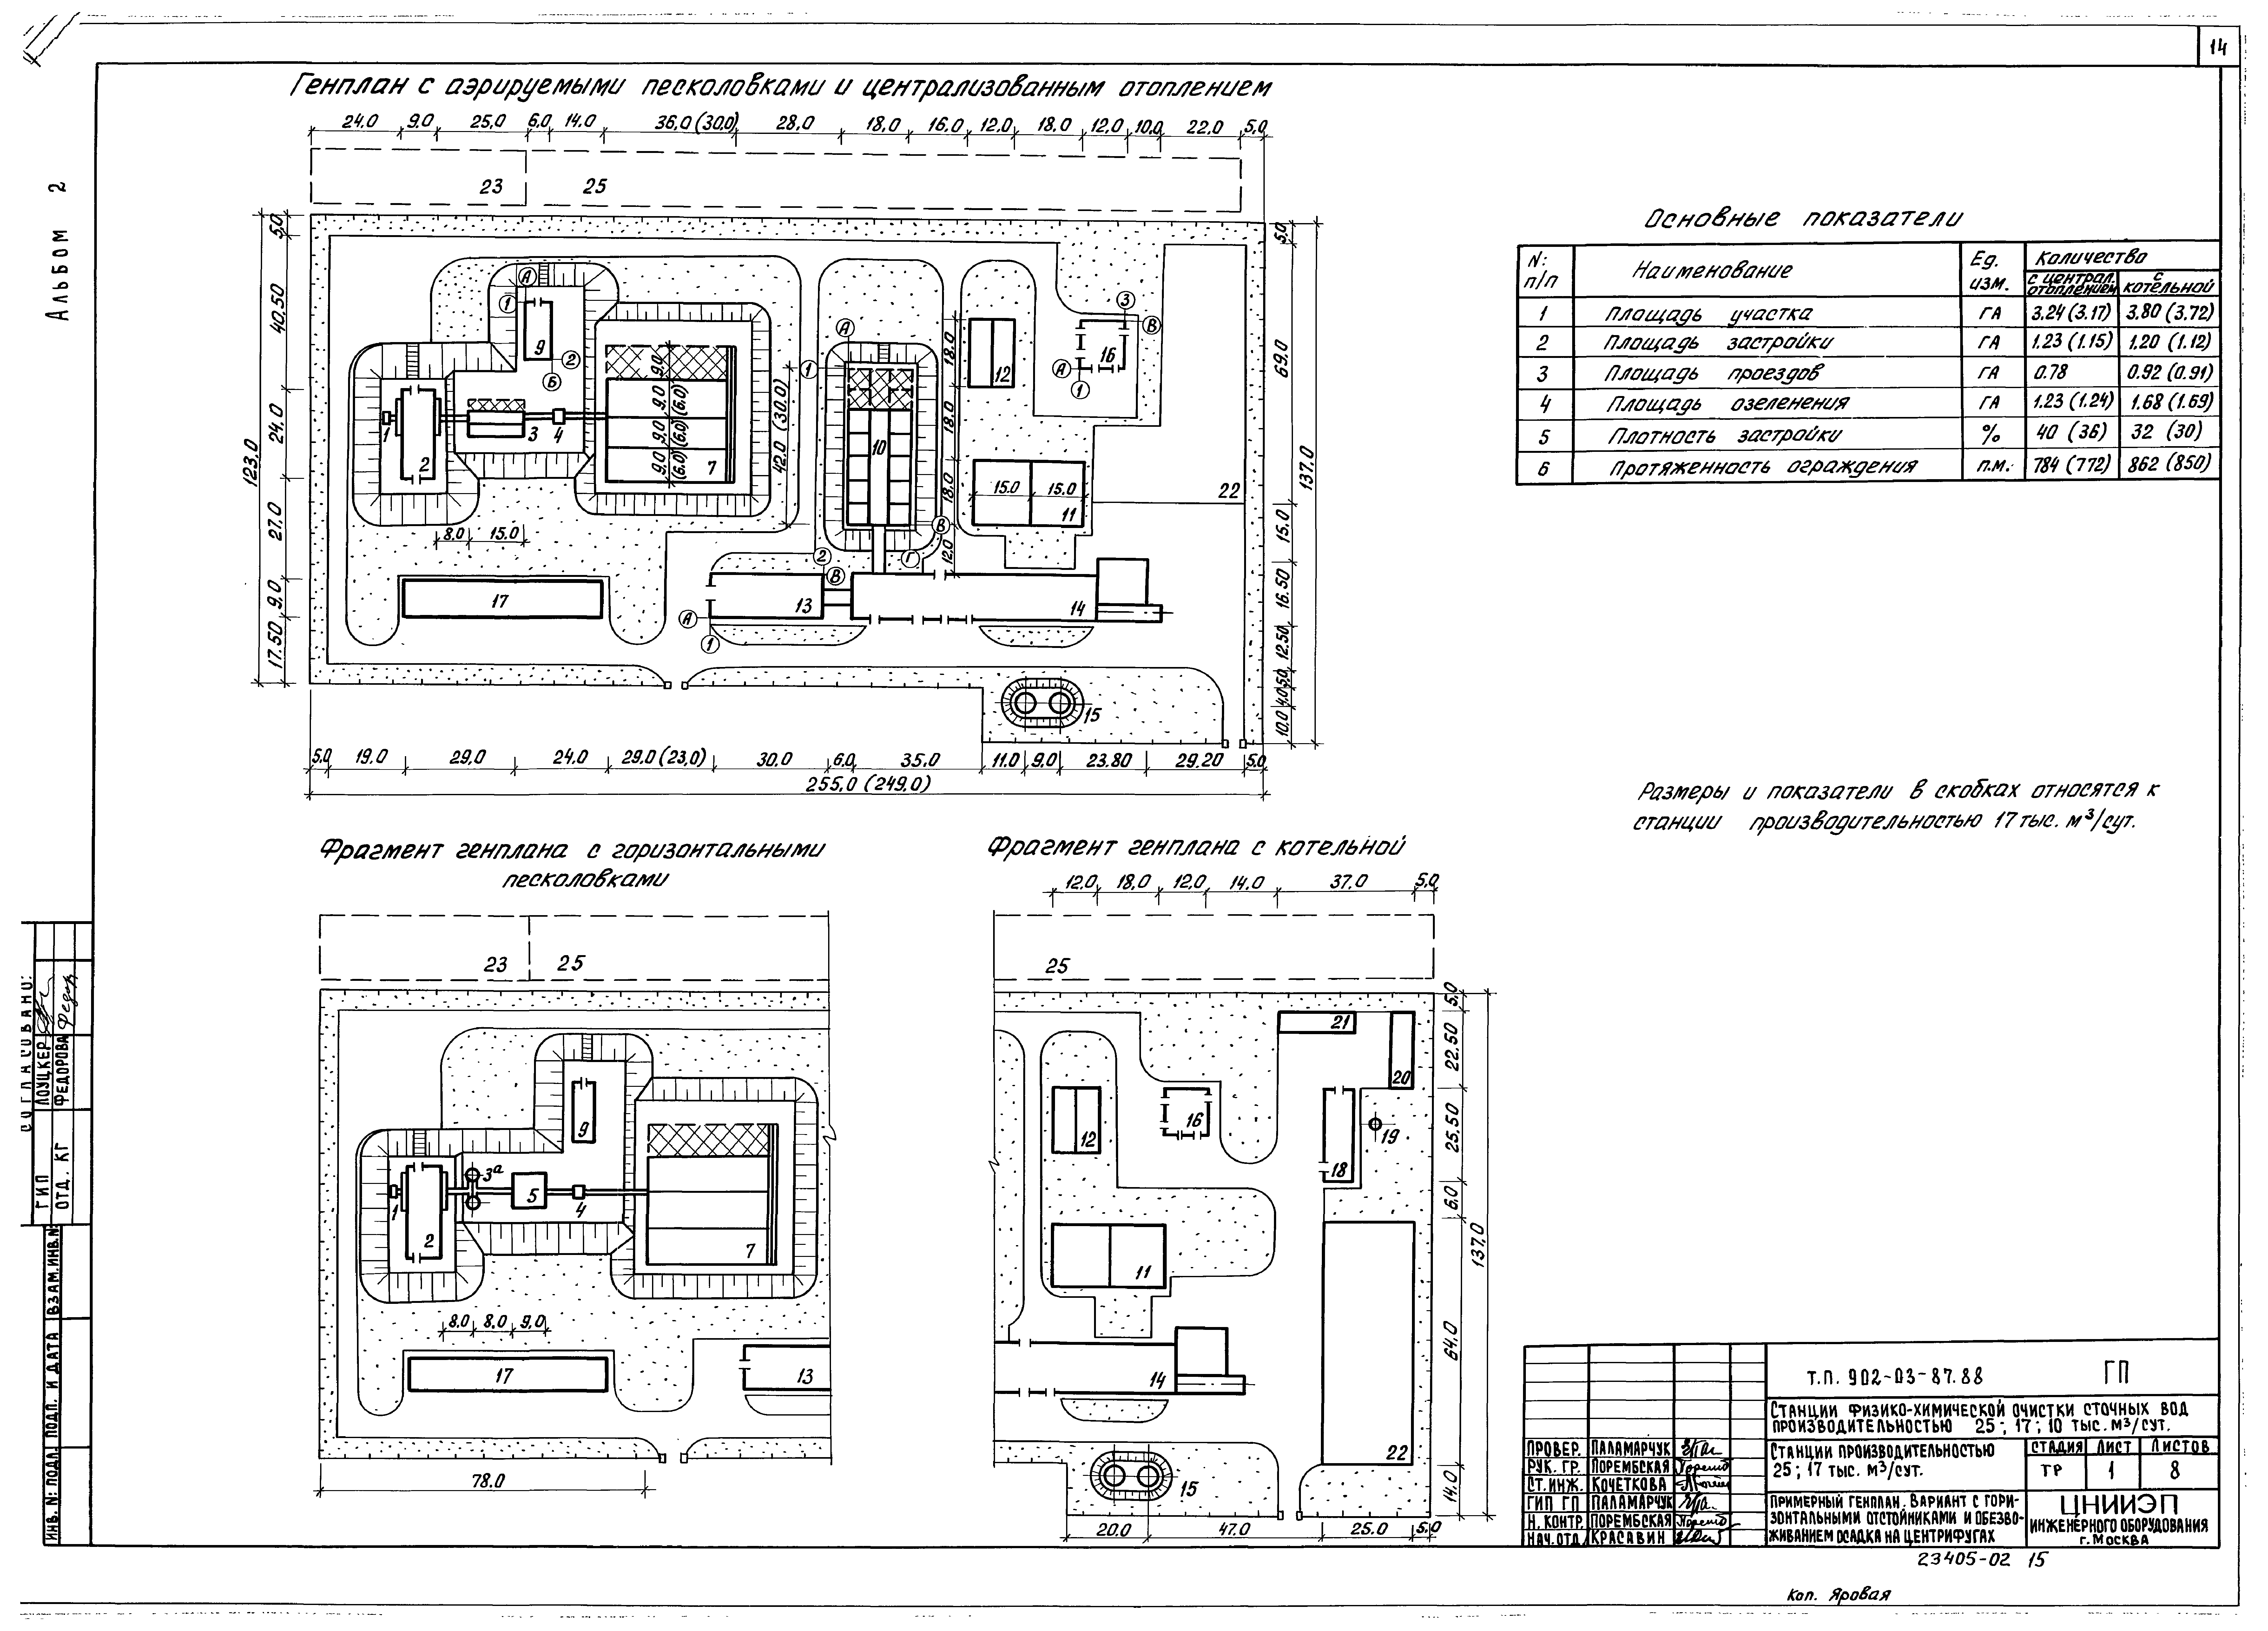 Типовые материалы для проектирования 902-03-87.88